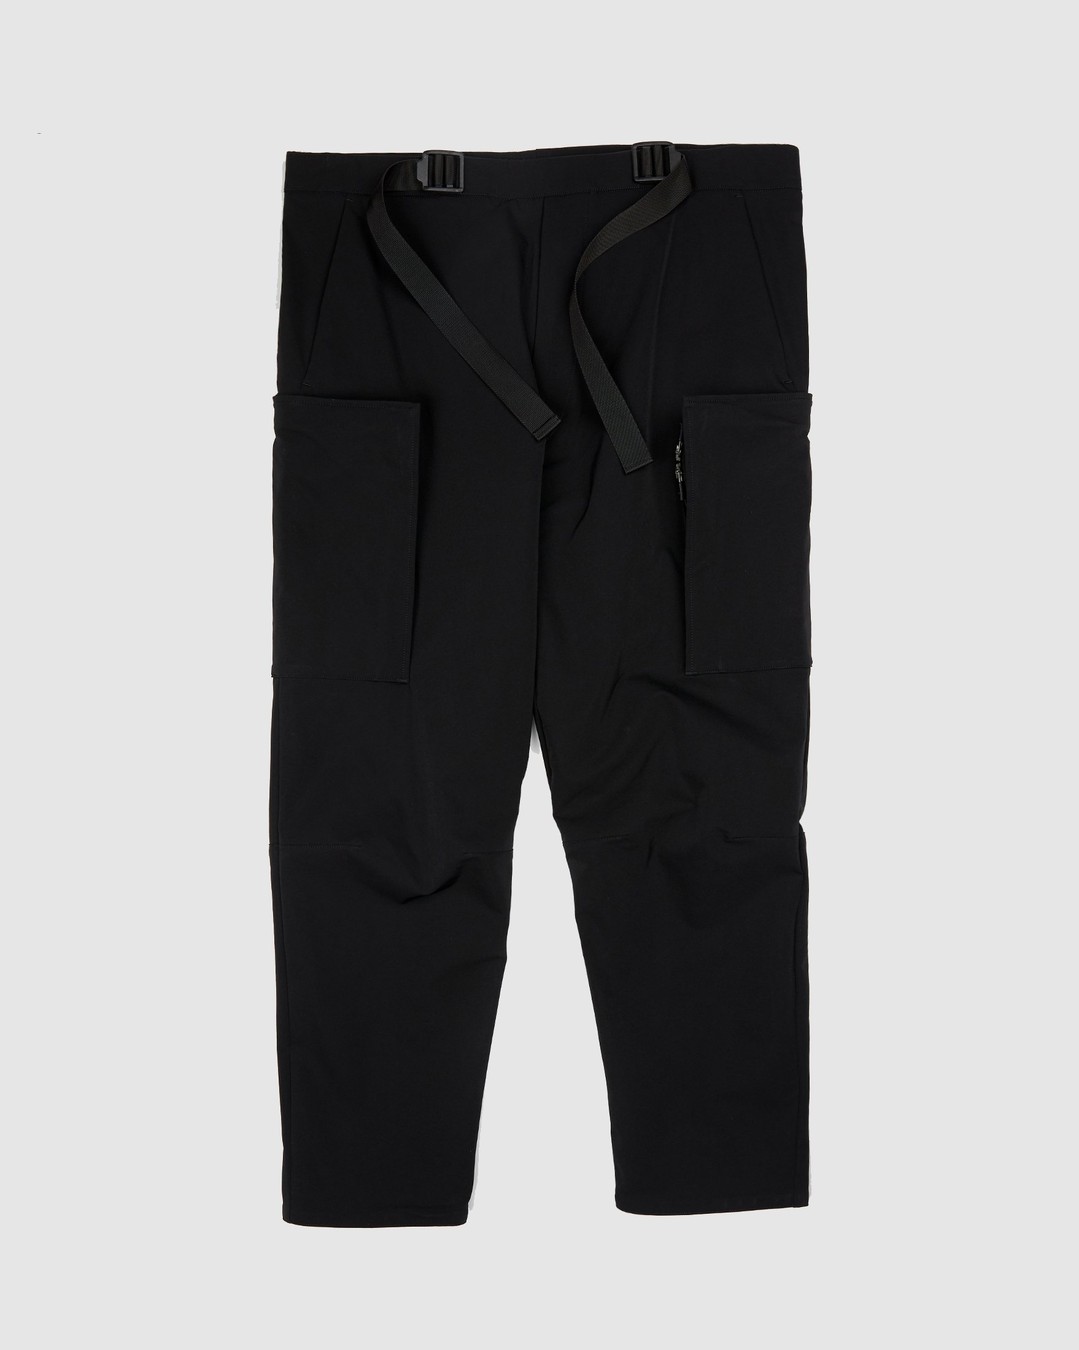 ACRONYM – P31A DS Trouser Black - Active Pants - Black - Image 1